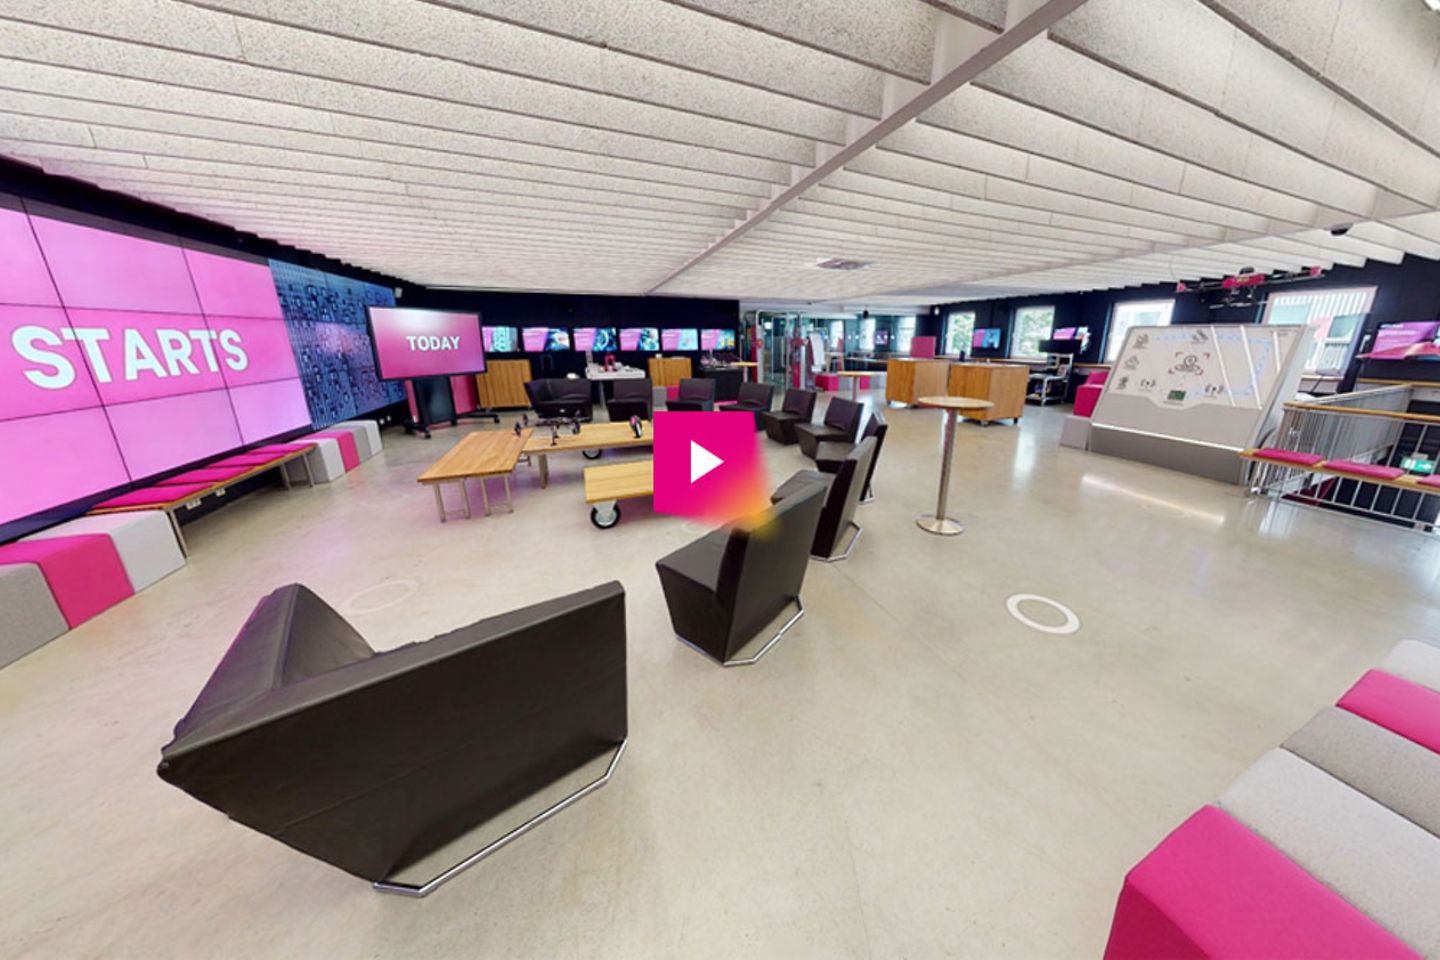 Virtuelle 3D-Tour durch das Innovation Center in München